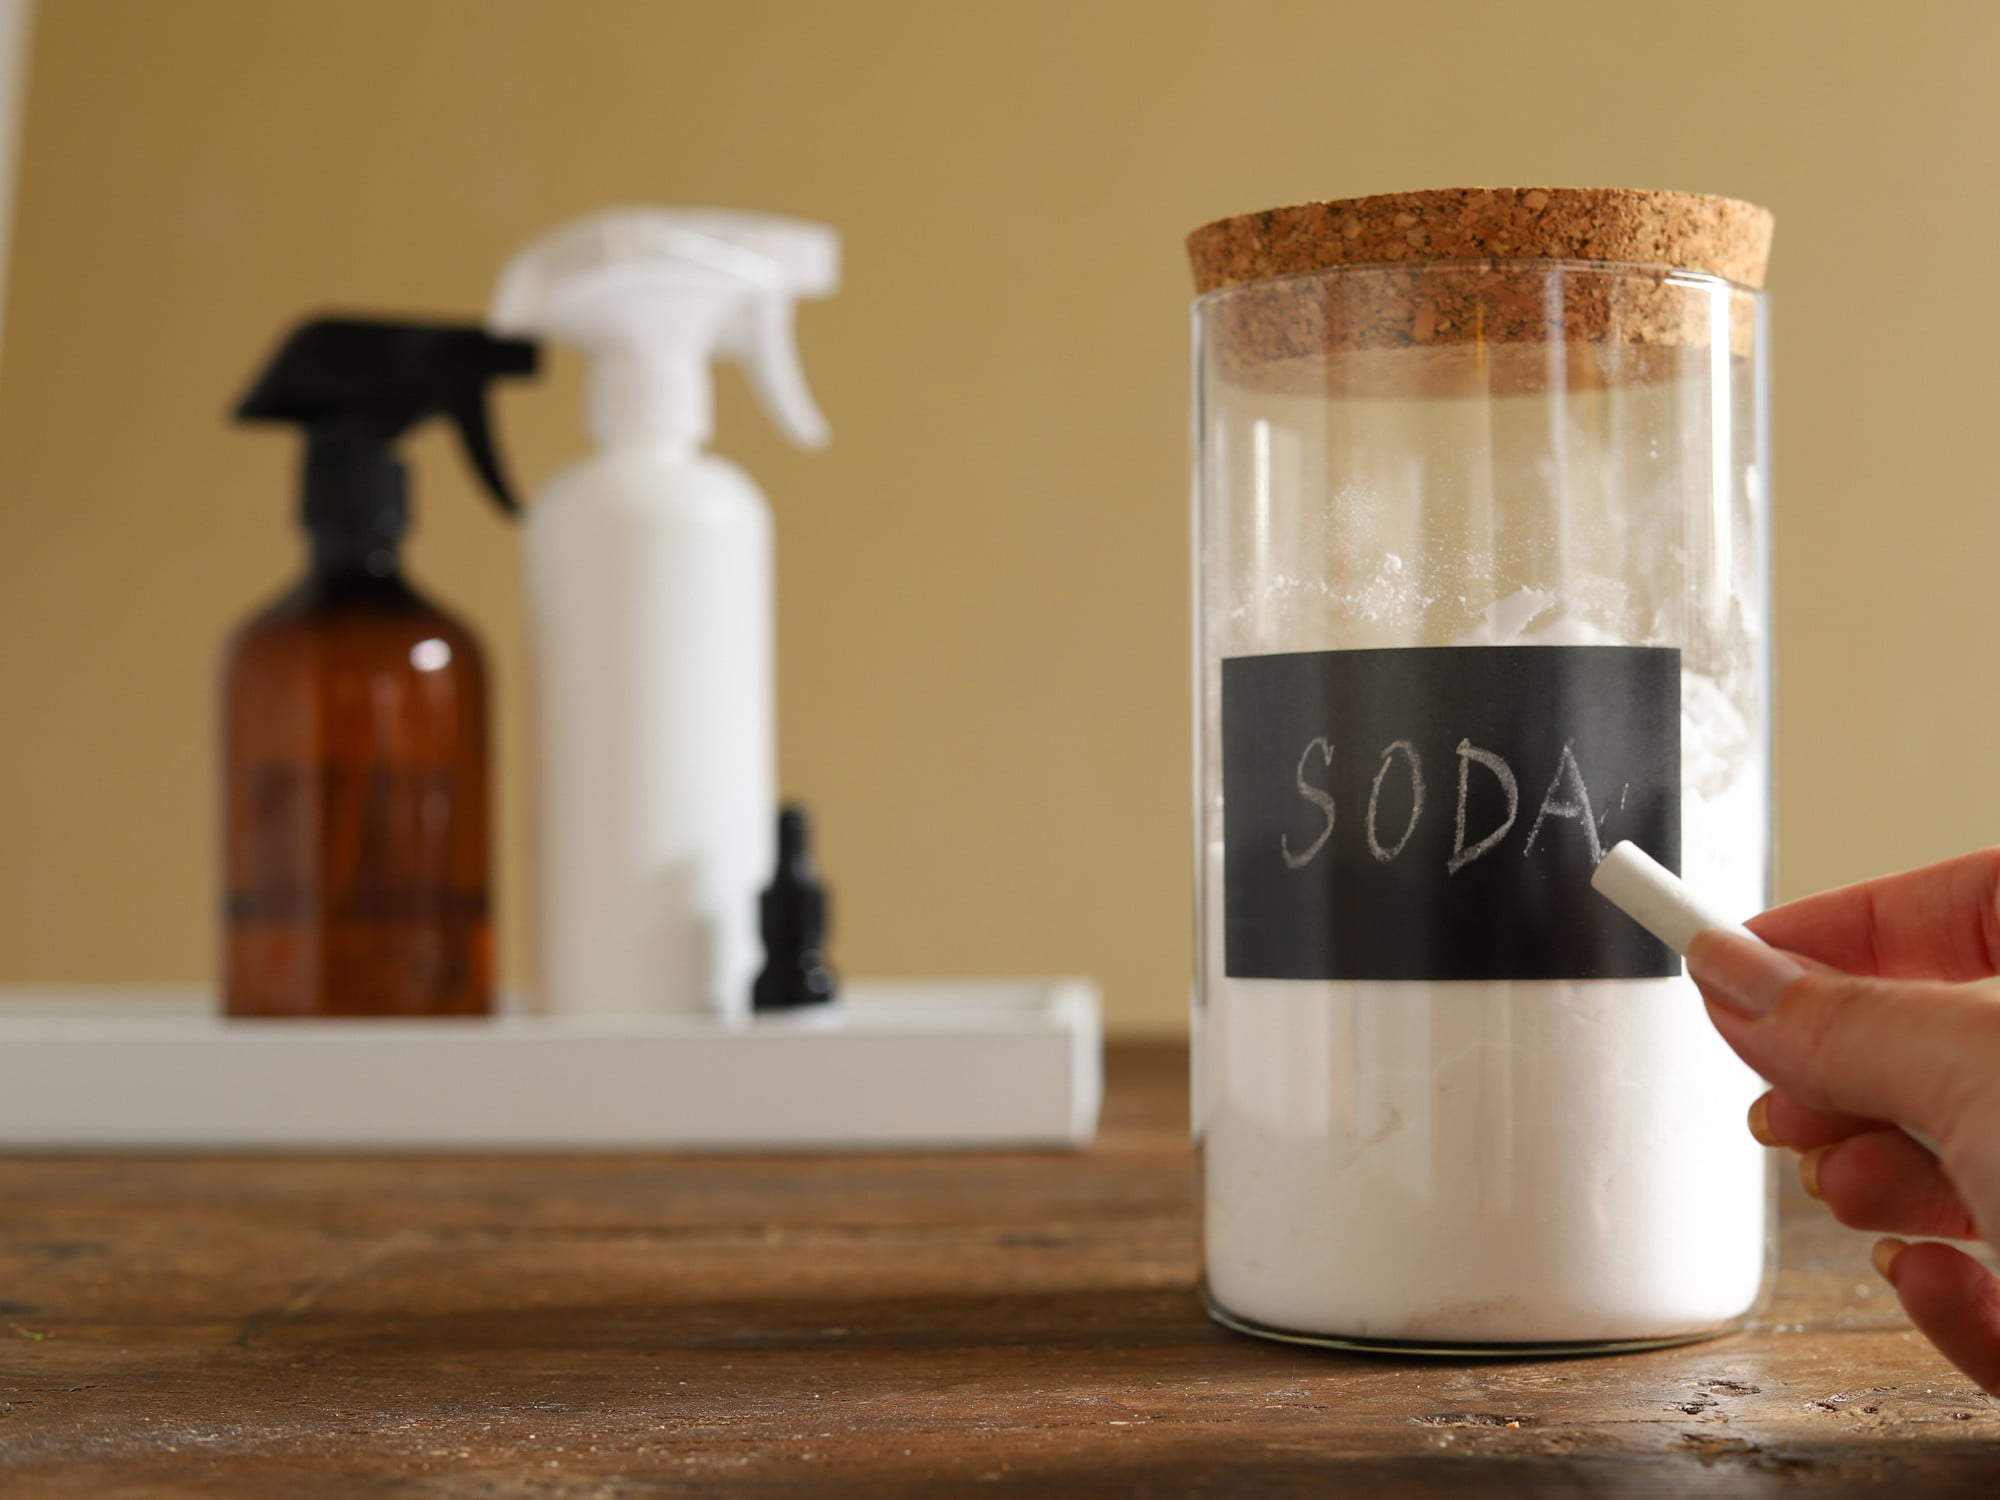 Păstrează atât bicarbonatul de sodiu cât și acidul citric în recipiente închise. Ai grijă să scrii pe ambalaj ce se află înăuntru.